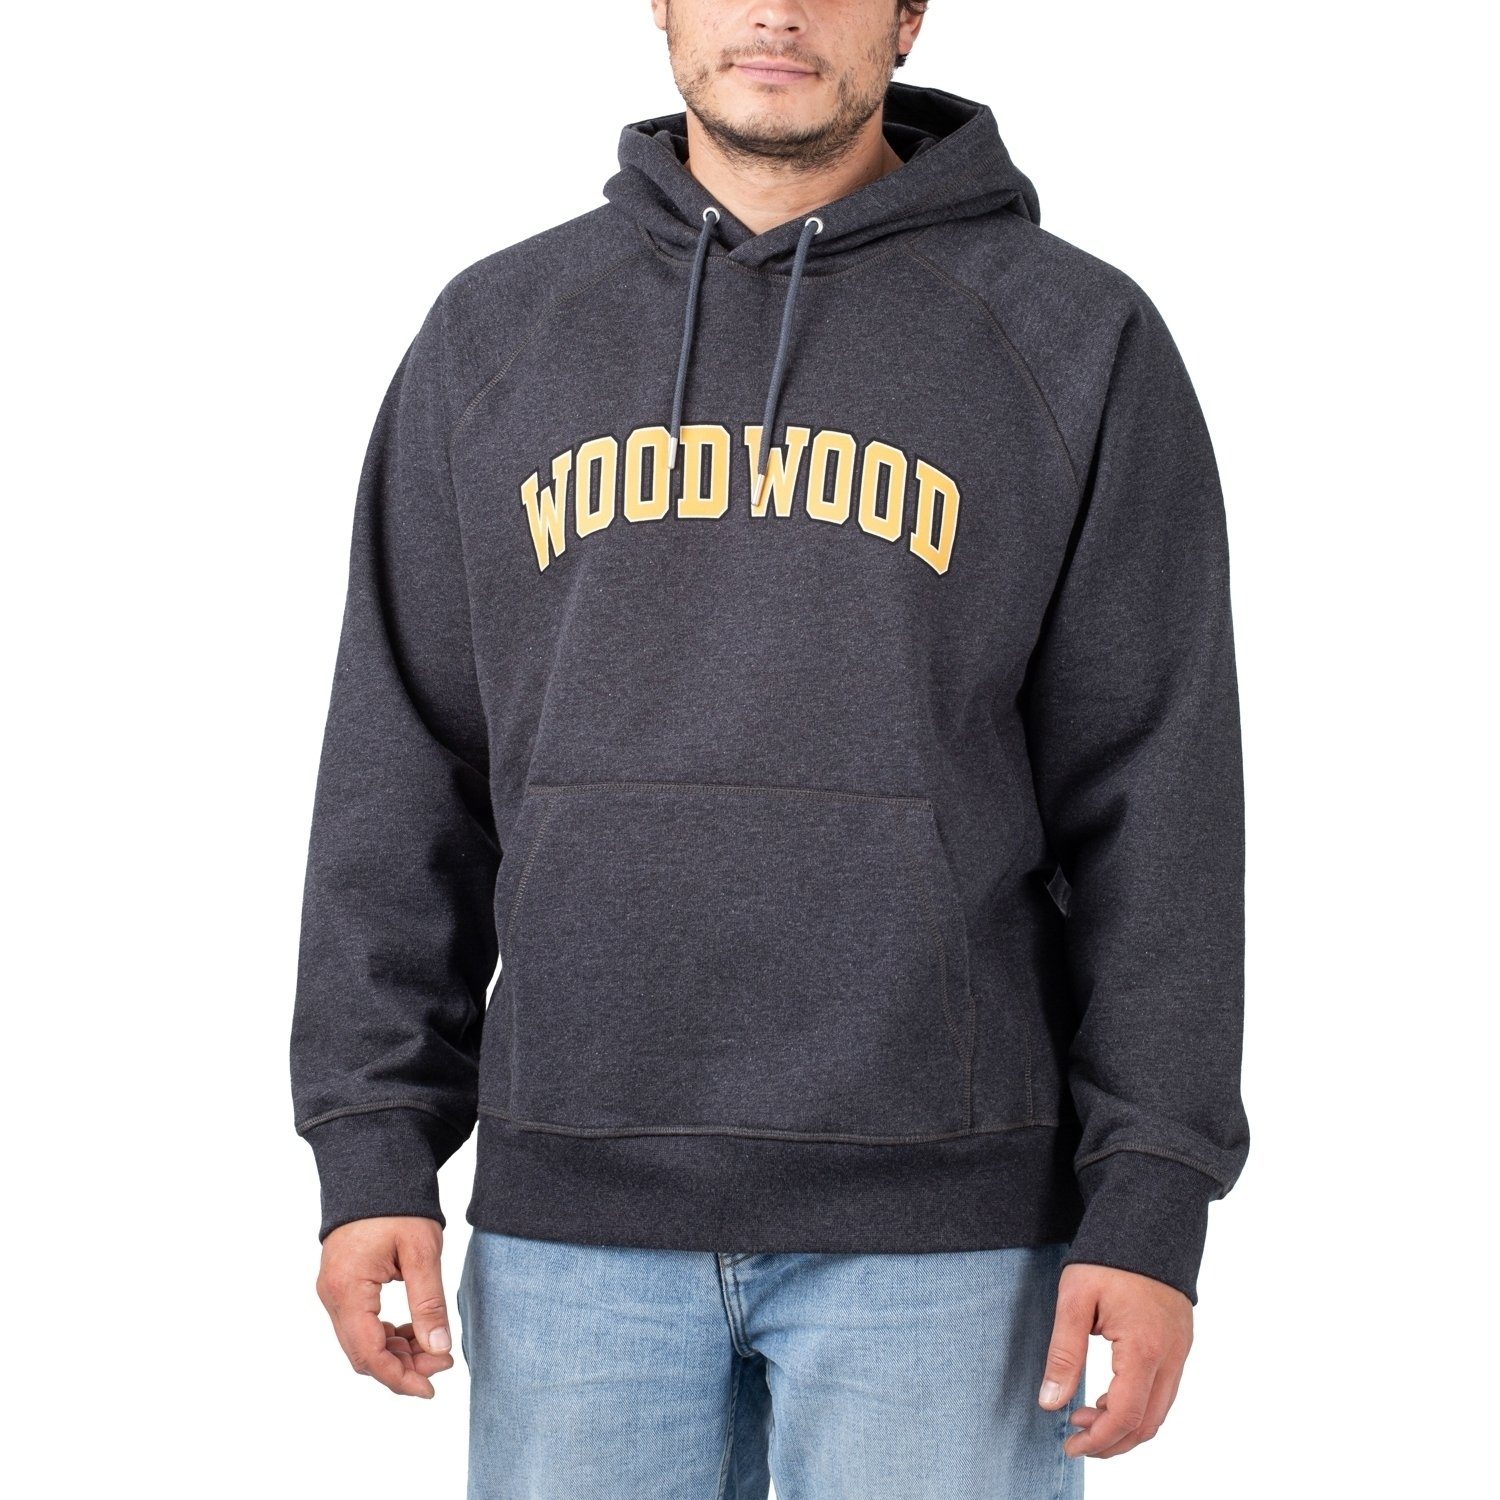 WOOD WOOD Sweater Wood Wood Fred IVY Hoodie